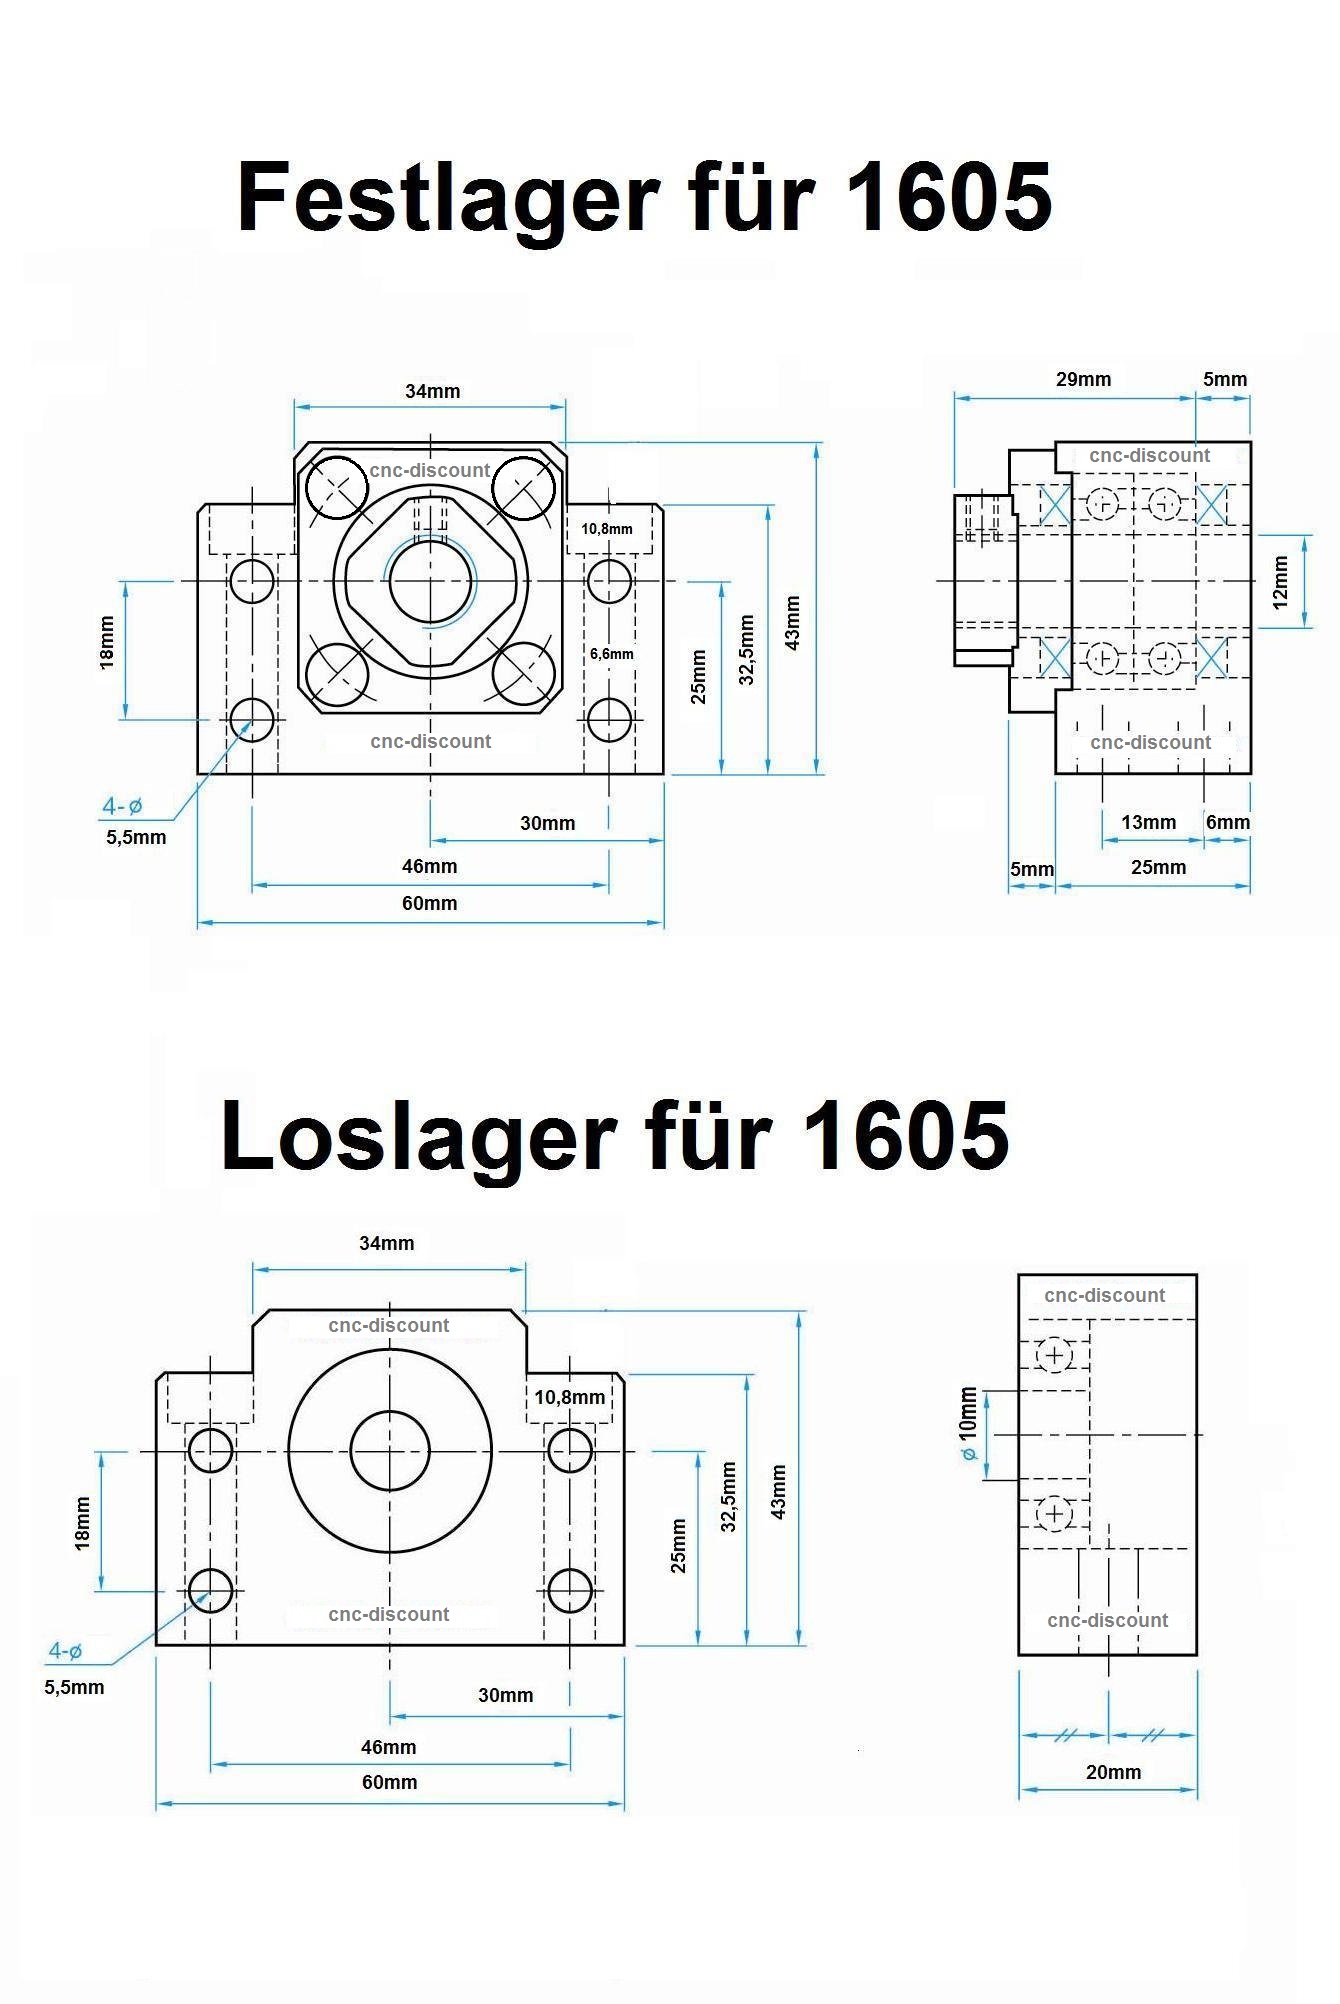 Kugelumlaufspindel 1605 x 900mm komplett Festlager Loslager Spindel CNC Fräse 3D 